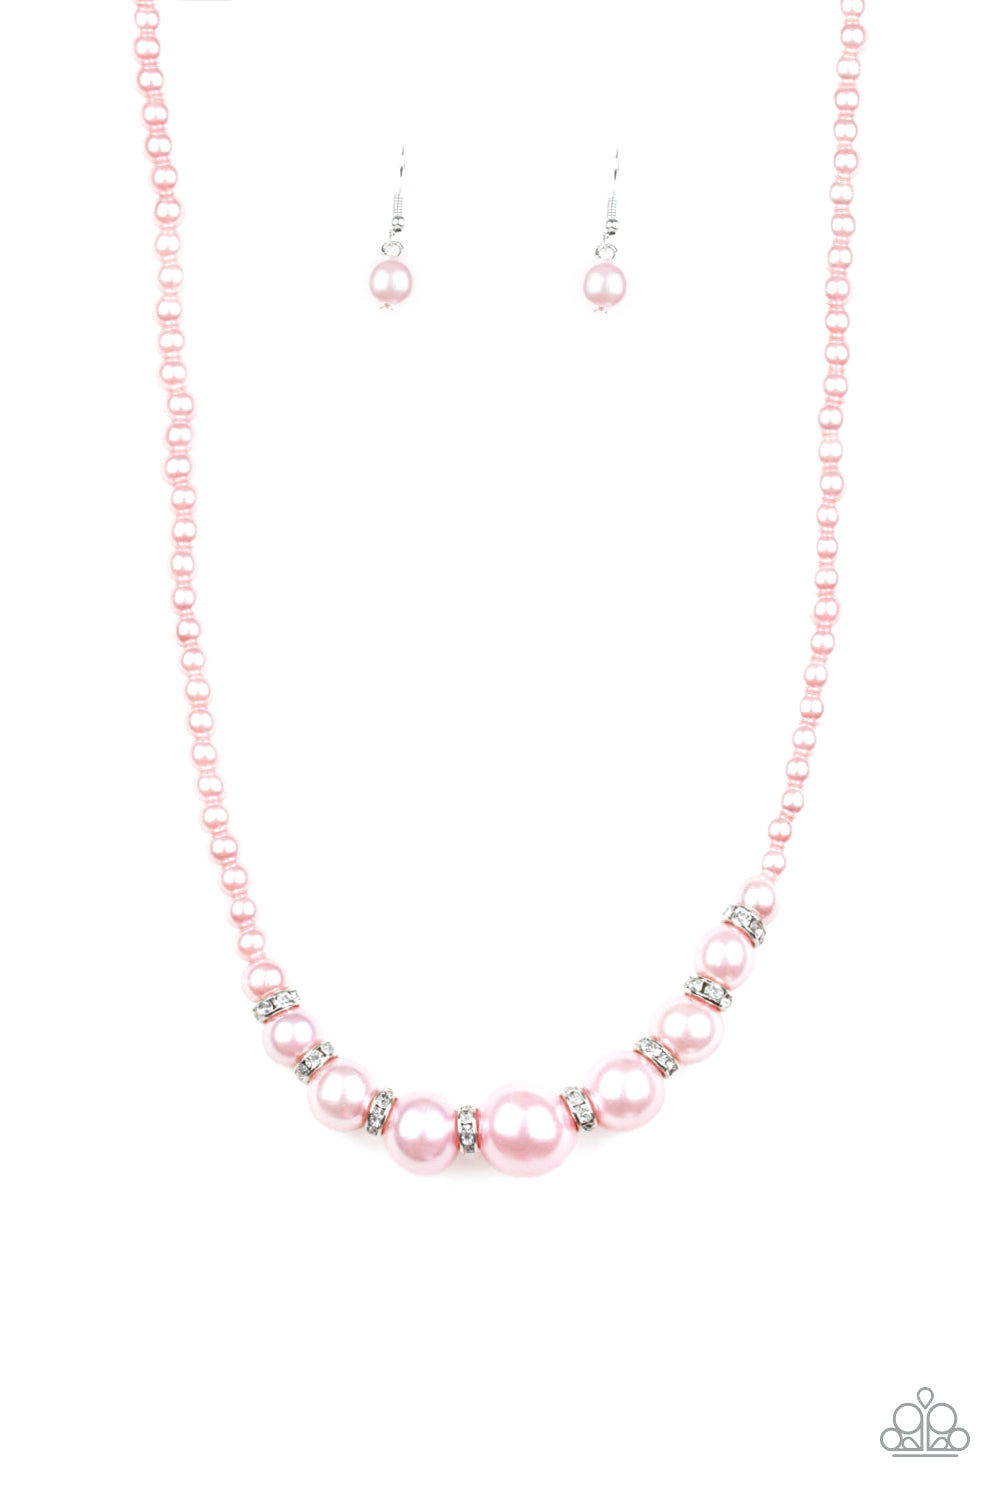 SoHo Sweetheart Pink Paparazzi Necklaces Cashmere Pink Jewels - Cashmere Pink Jewels & Accessories, Cashmere Pink Jewels & Accessories - Paparazzi